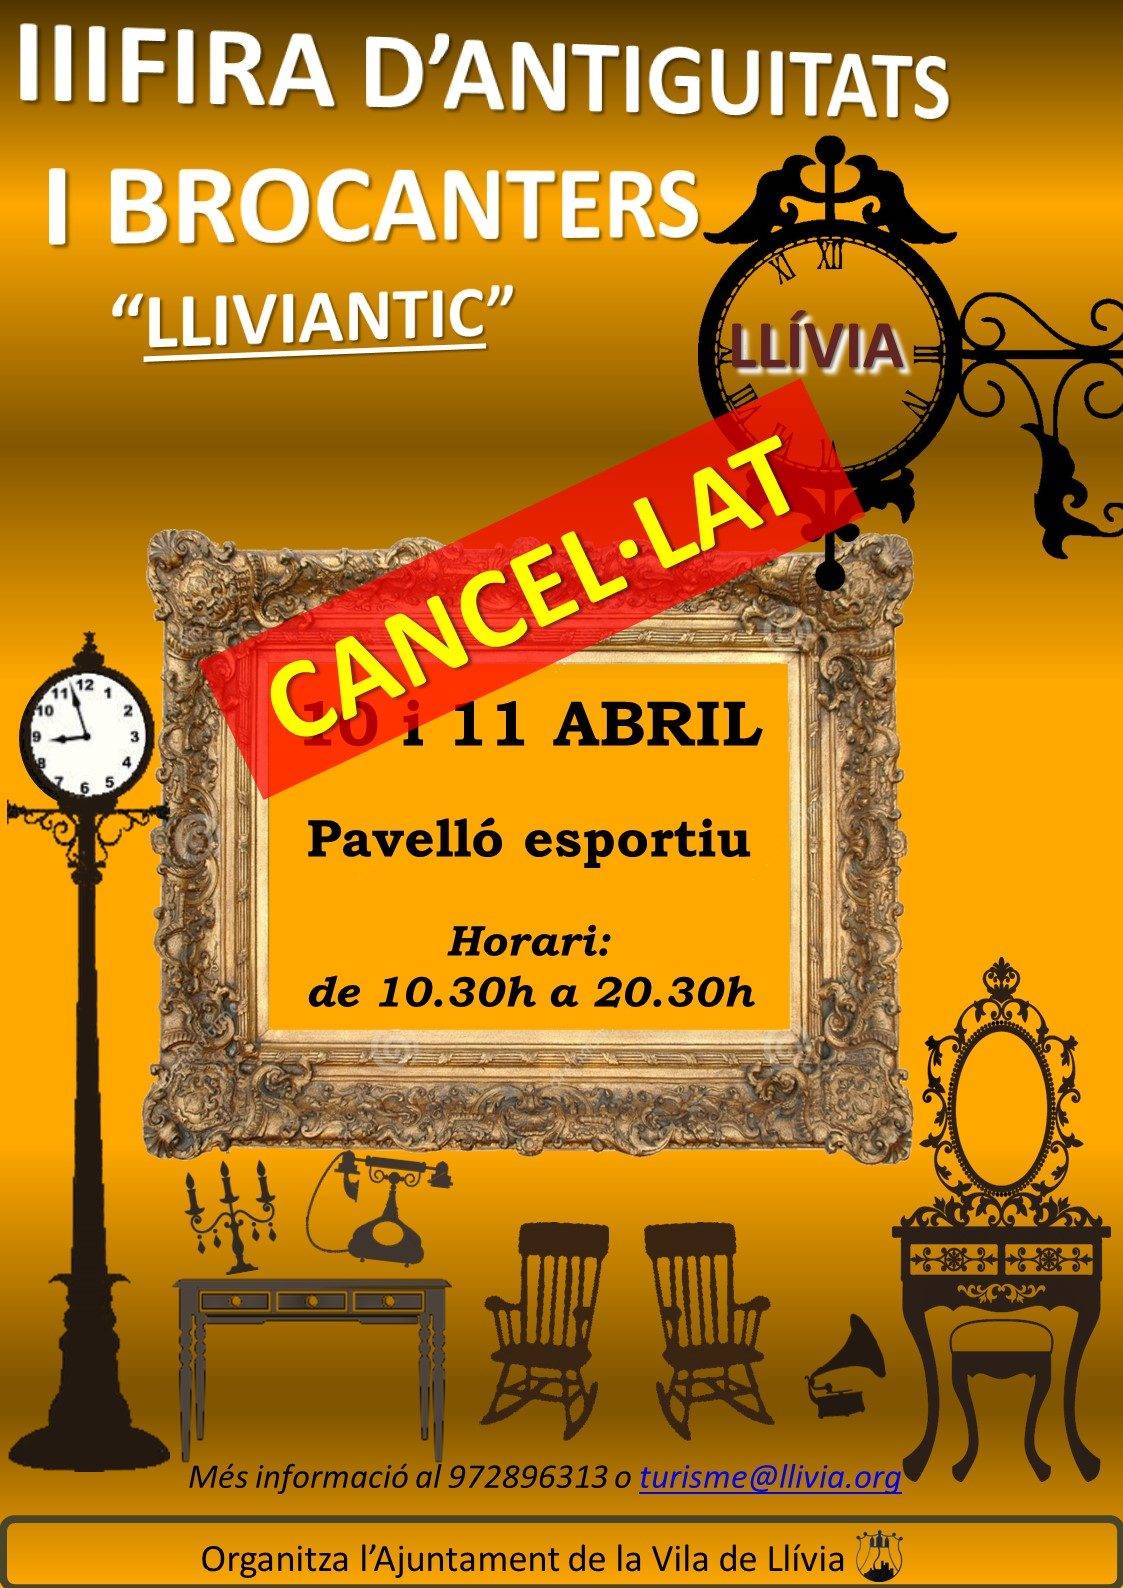 Lliviantic, Fira d'antiguitats i brocanters 2020 cancelada